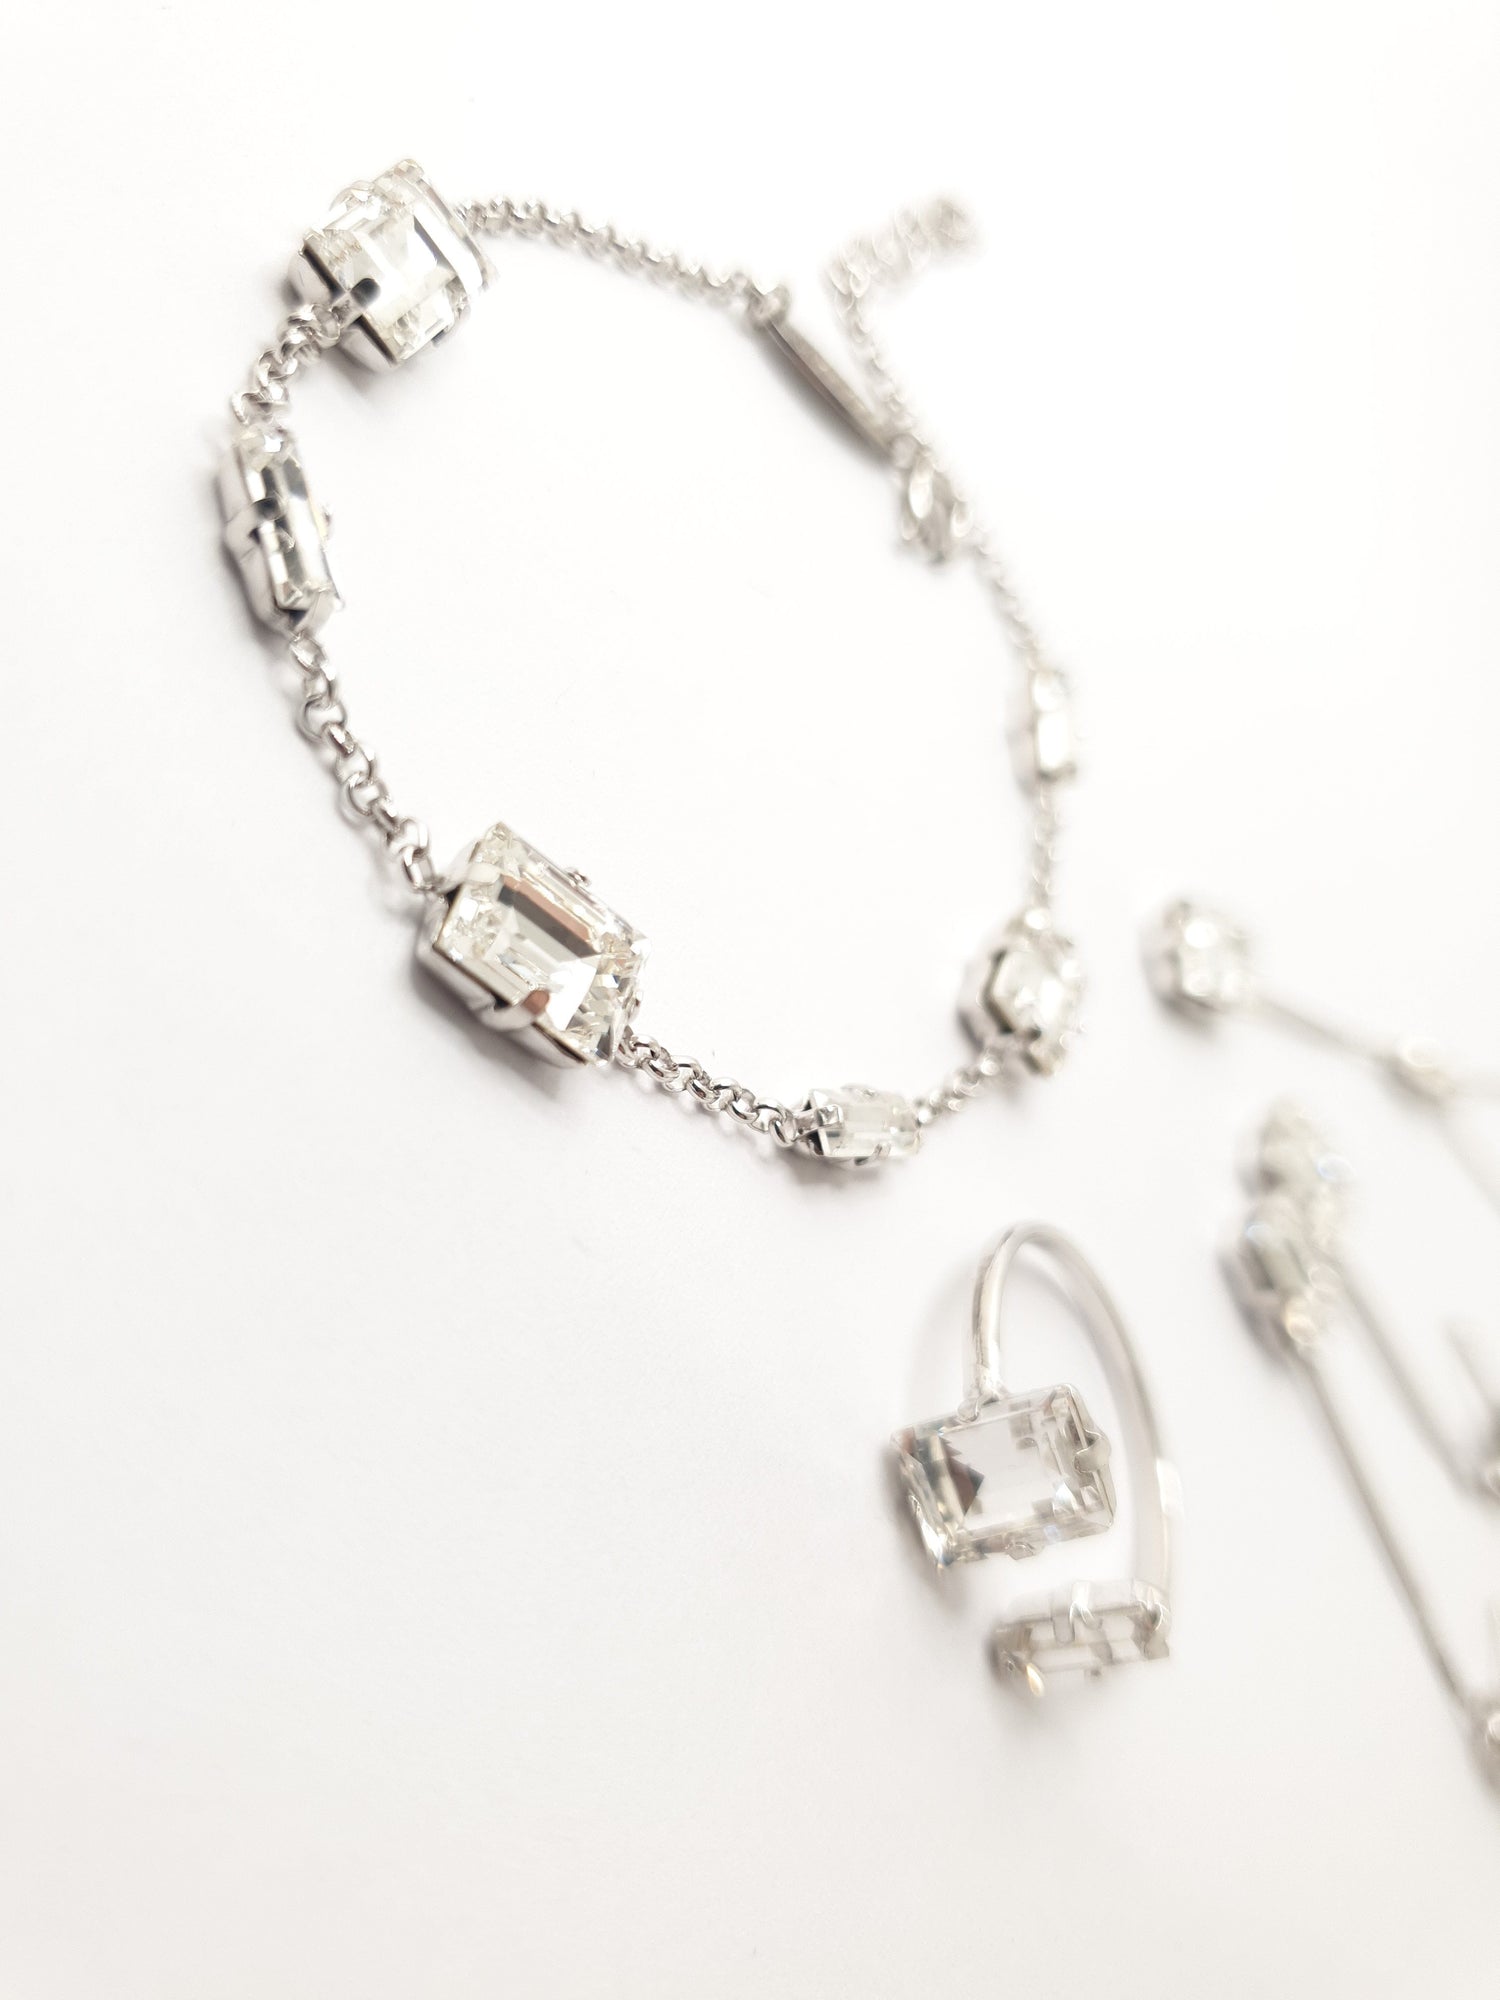 Swarovski Armband aus 925 Silber mit von Hand eingesetzten weißen funkelnden Kristallen, Ring in verstellbarer Größe verziert mit einem weißen großen eckigen Kristall und einem kleinen länglichen weißen Kristall 